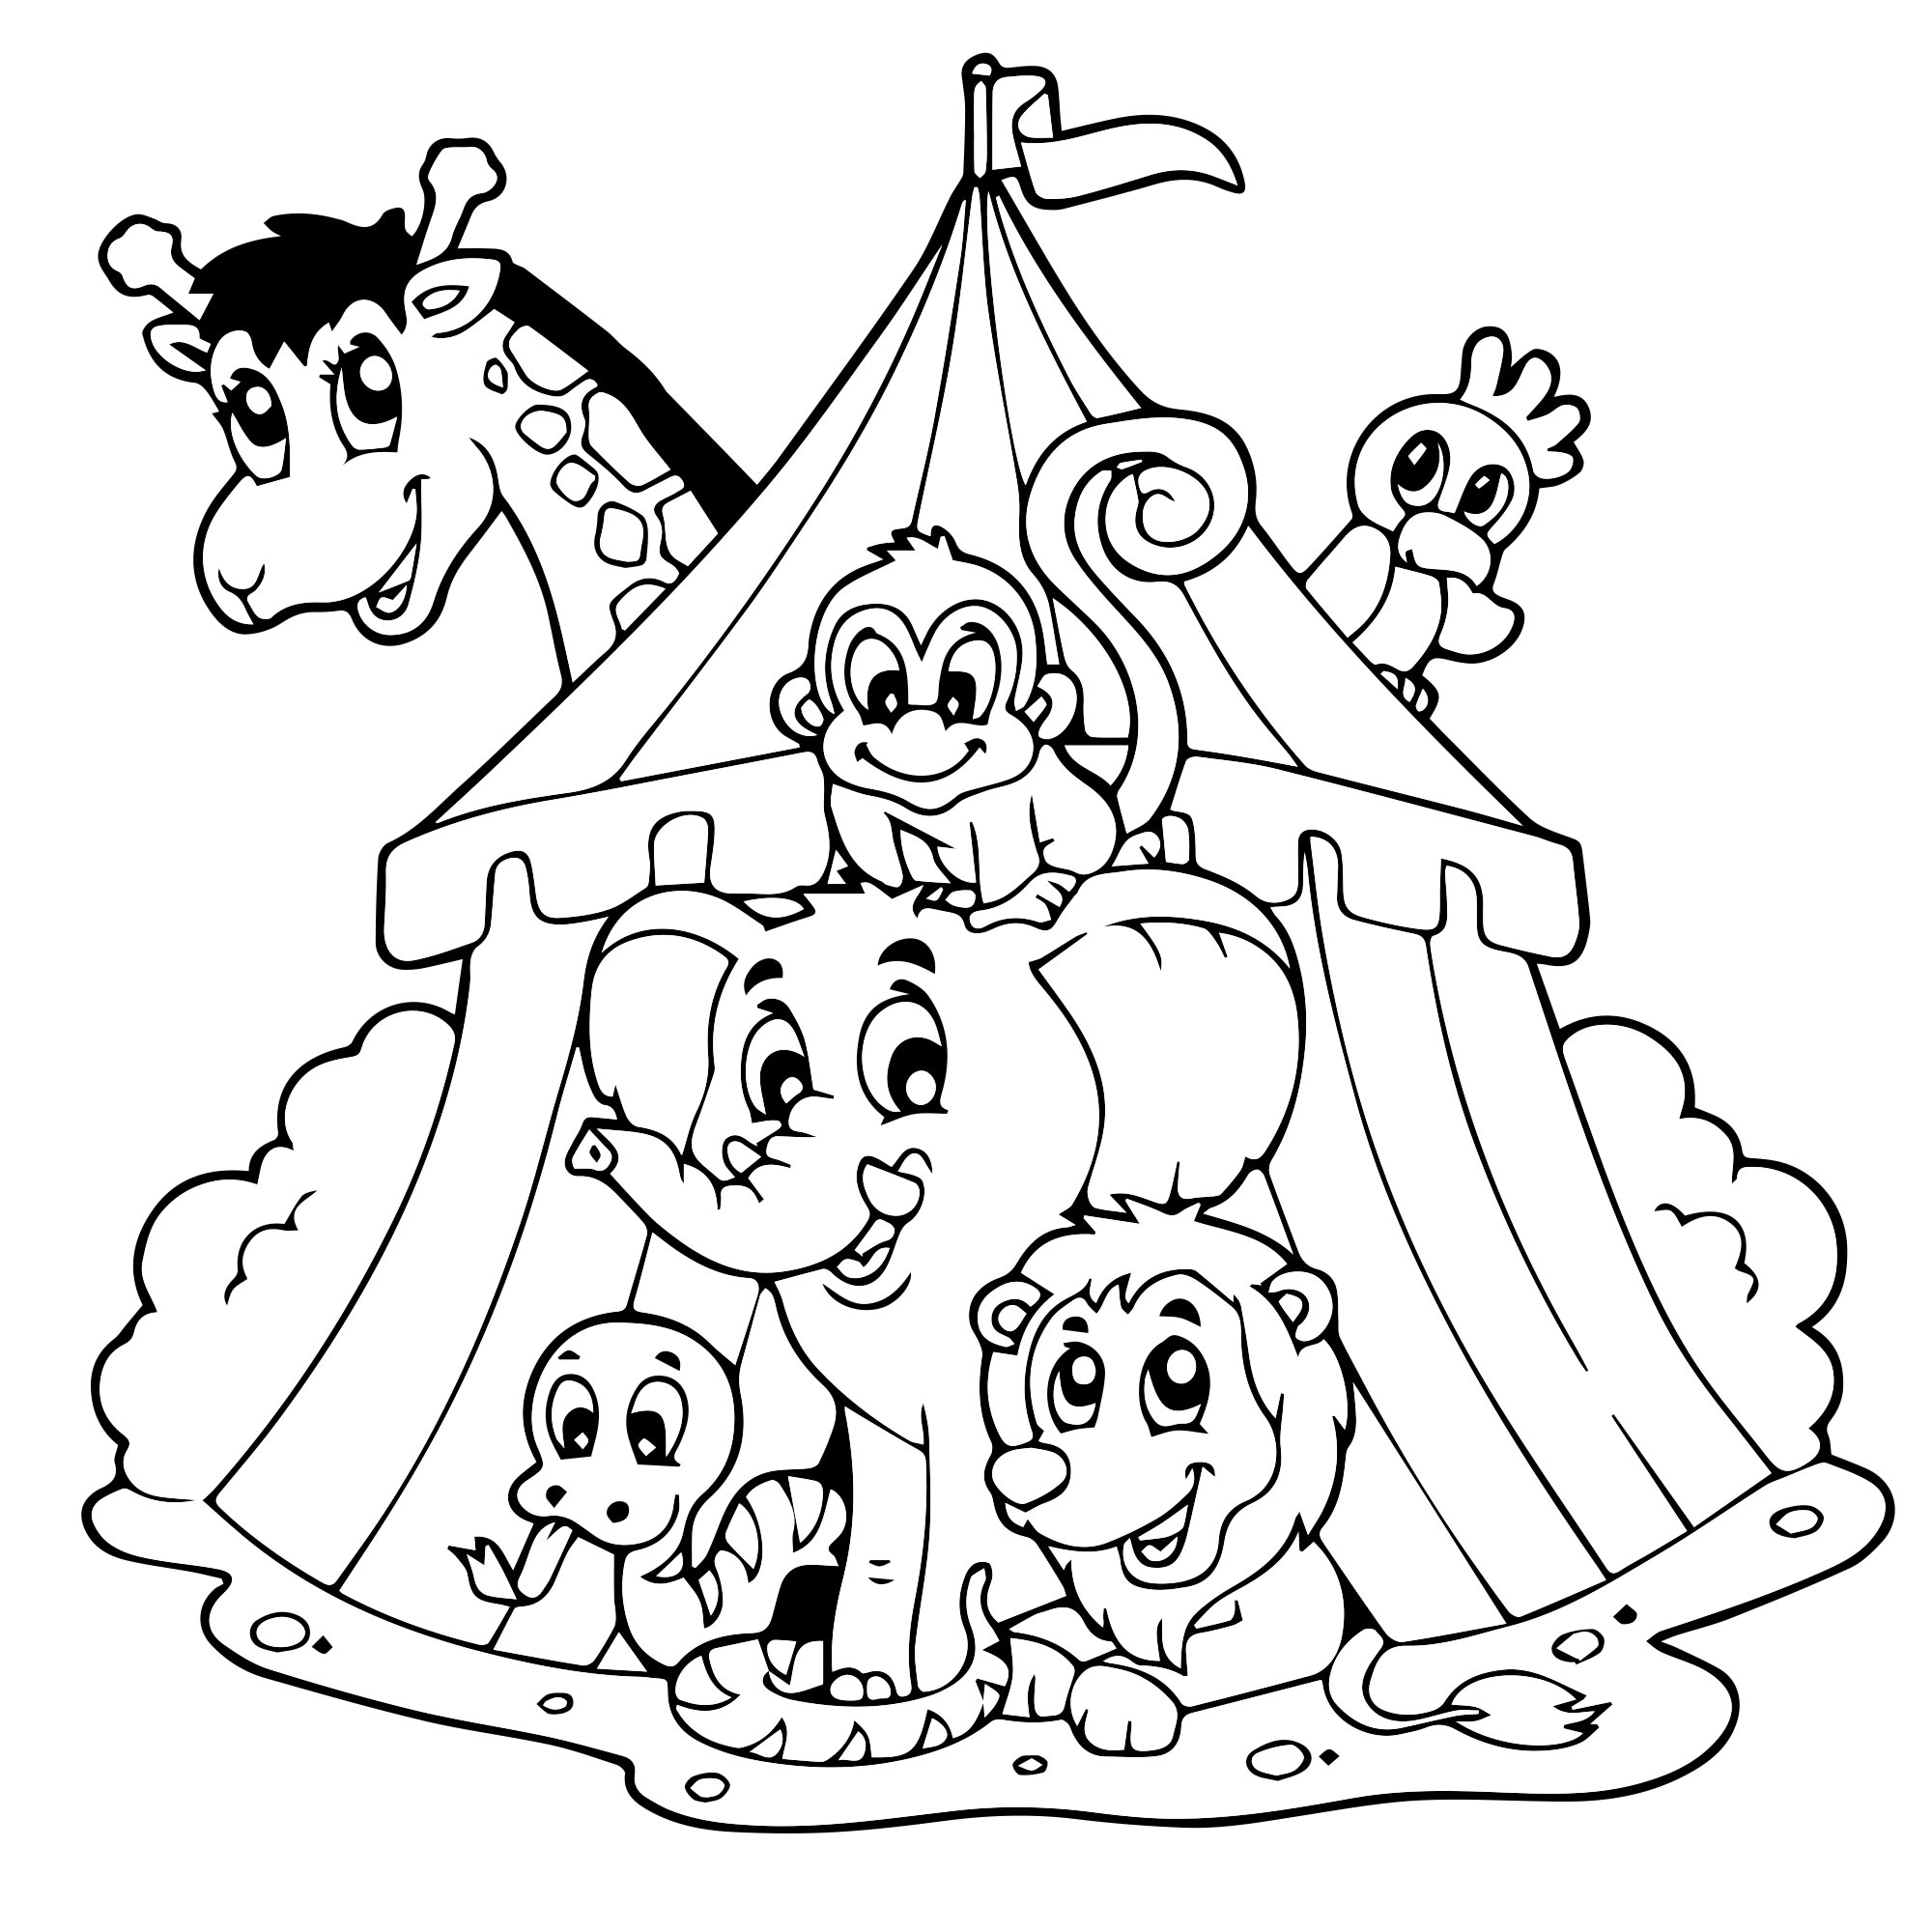 Цирк раскраска для детей